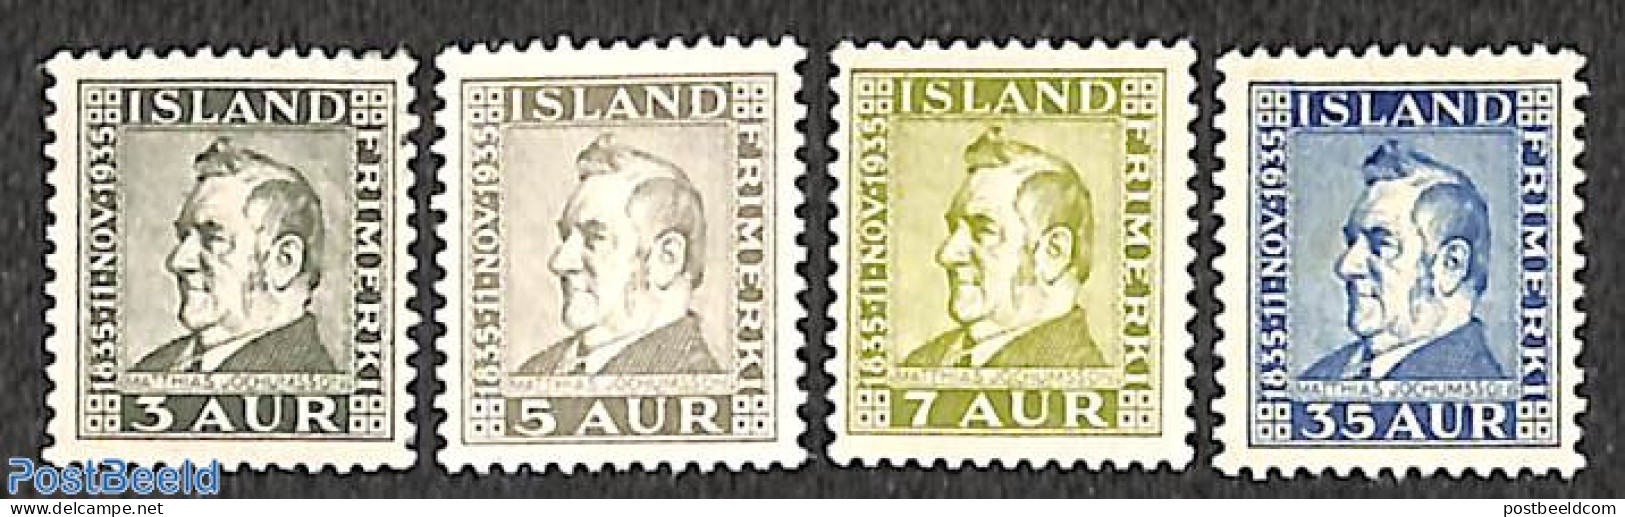 Iceland 1935 Matthias Jochumsson 4v, Unused (hinged), Art - Authors - Unused Stamps